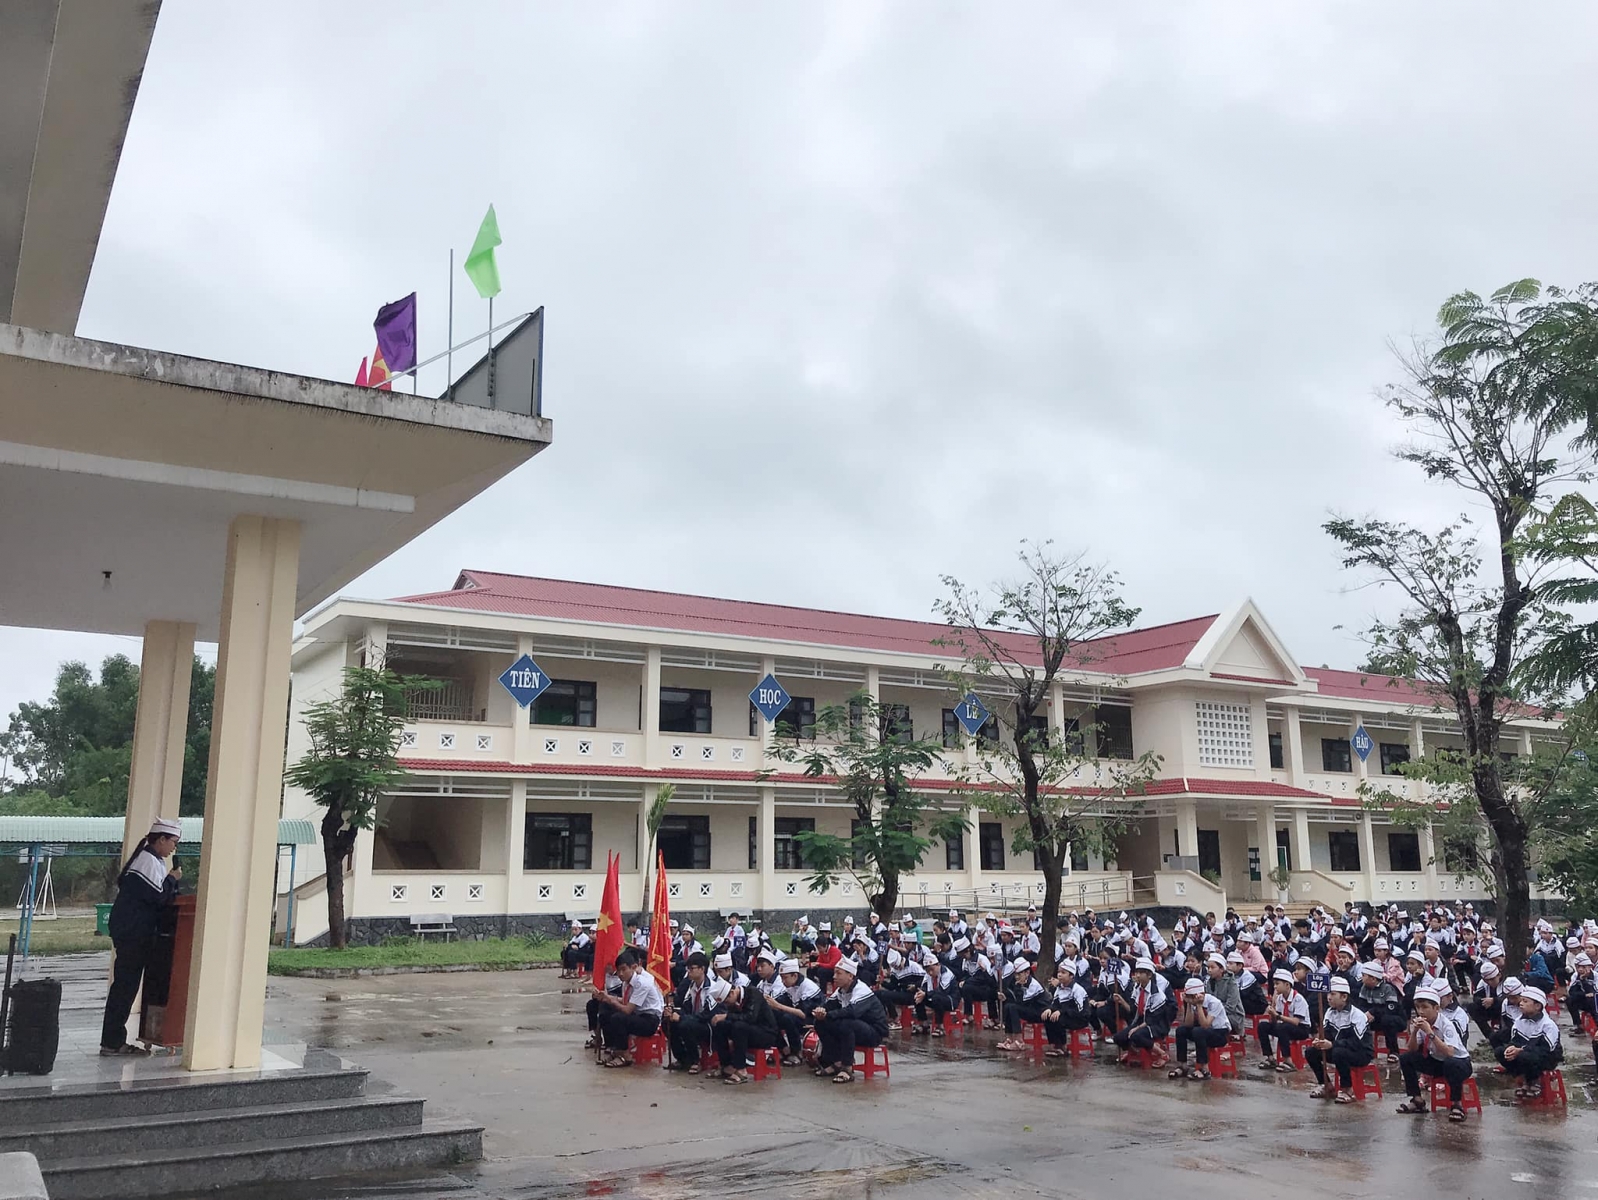 Quảng Nam: Dừng hoạt động Trường THCS Lê Quý Đôn do không có căn cứ pháp lý